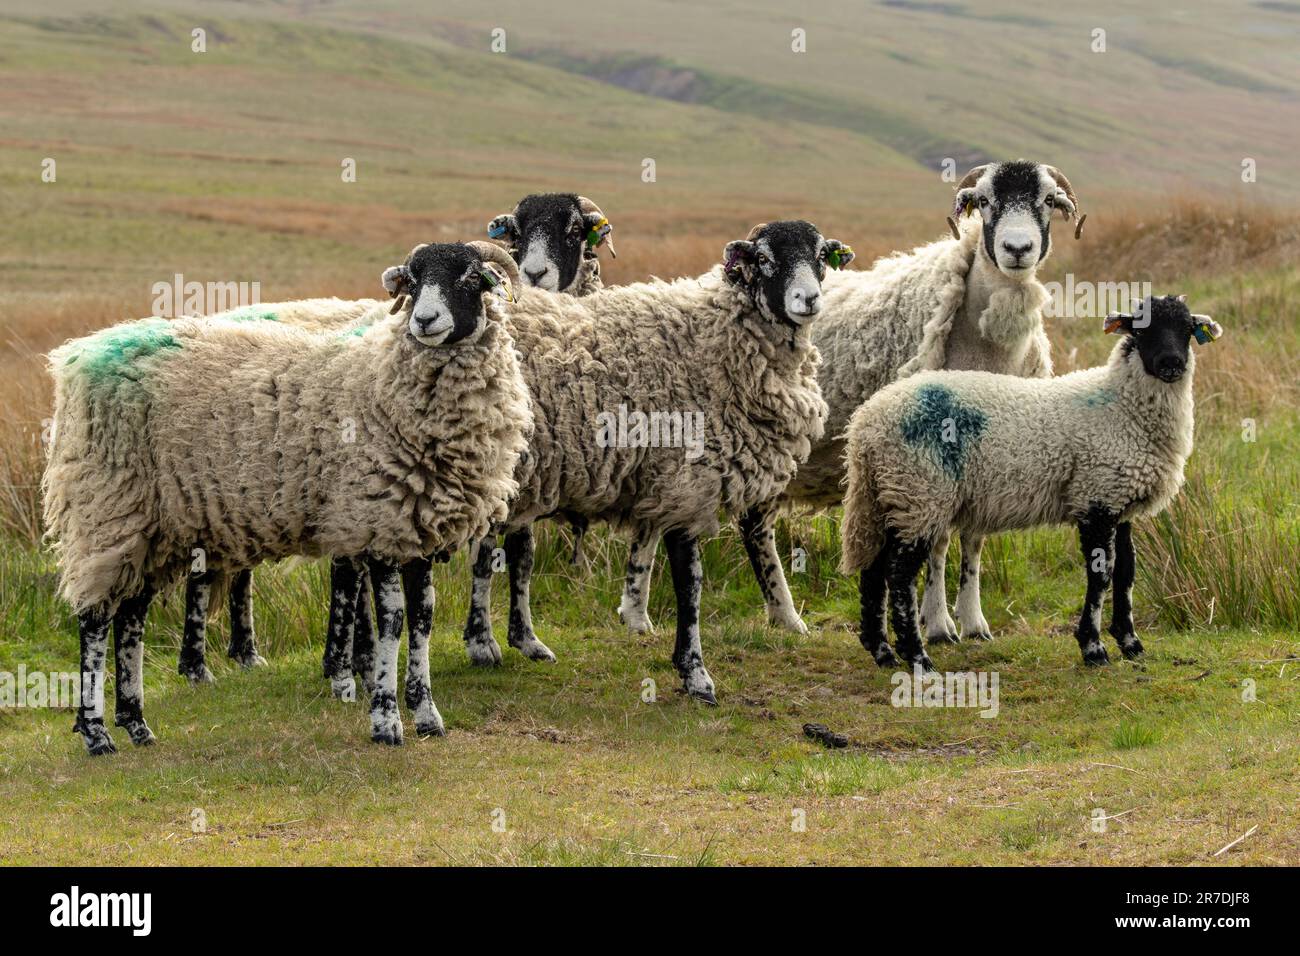 Moutons de Swaledale en itinérance libre sur les landes de mérous gérés dans le Yorkshire Dales, Royaume-Uni. Quatre brebis et un agneau bien cultivé. Face à l'avant. Horizontale. Banque D'Images